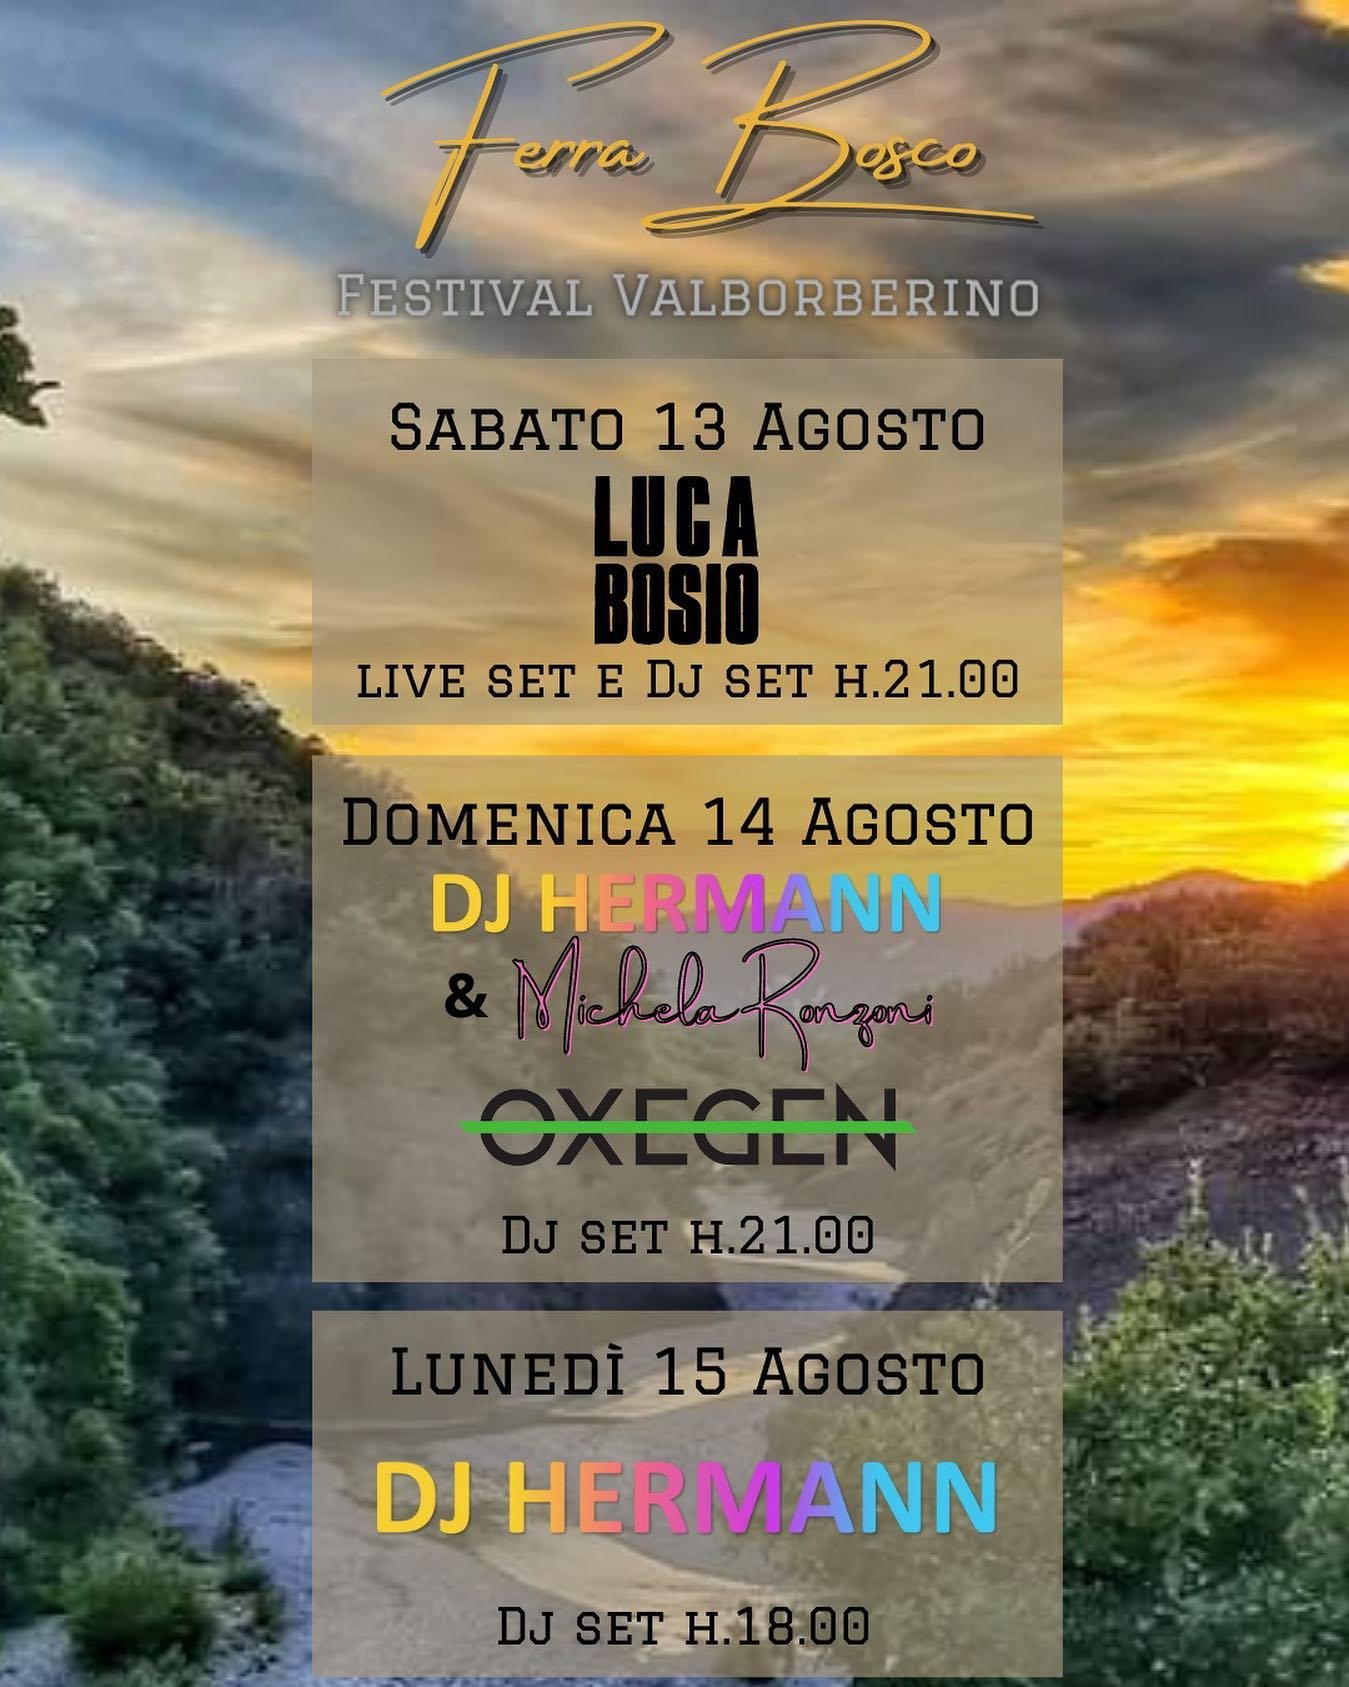 Dal 13 al 15 agosto a Borghetto Borbera a Boscopiano musica live con “Ferra Bosco”